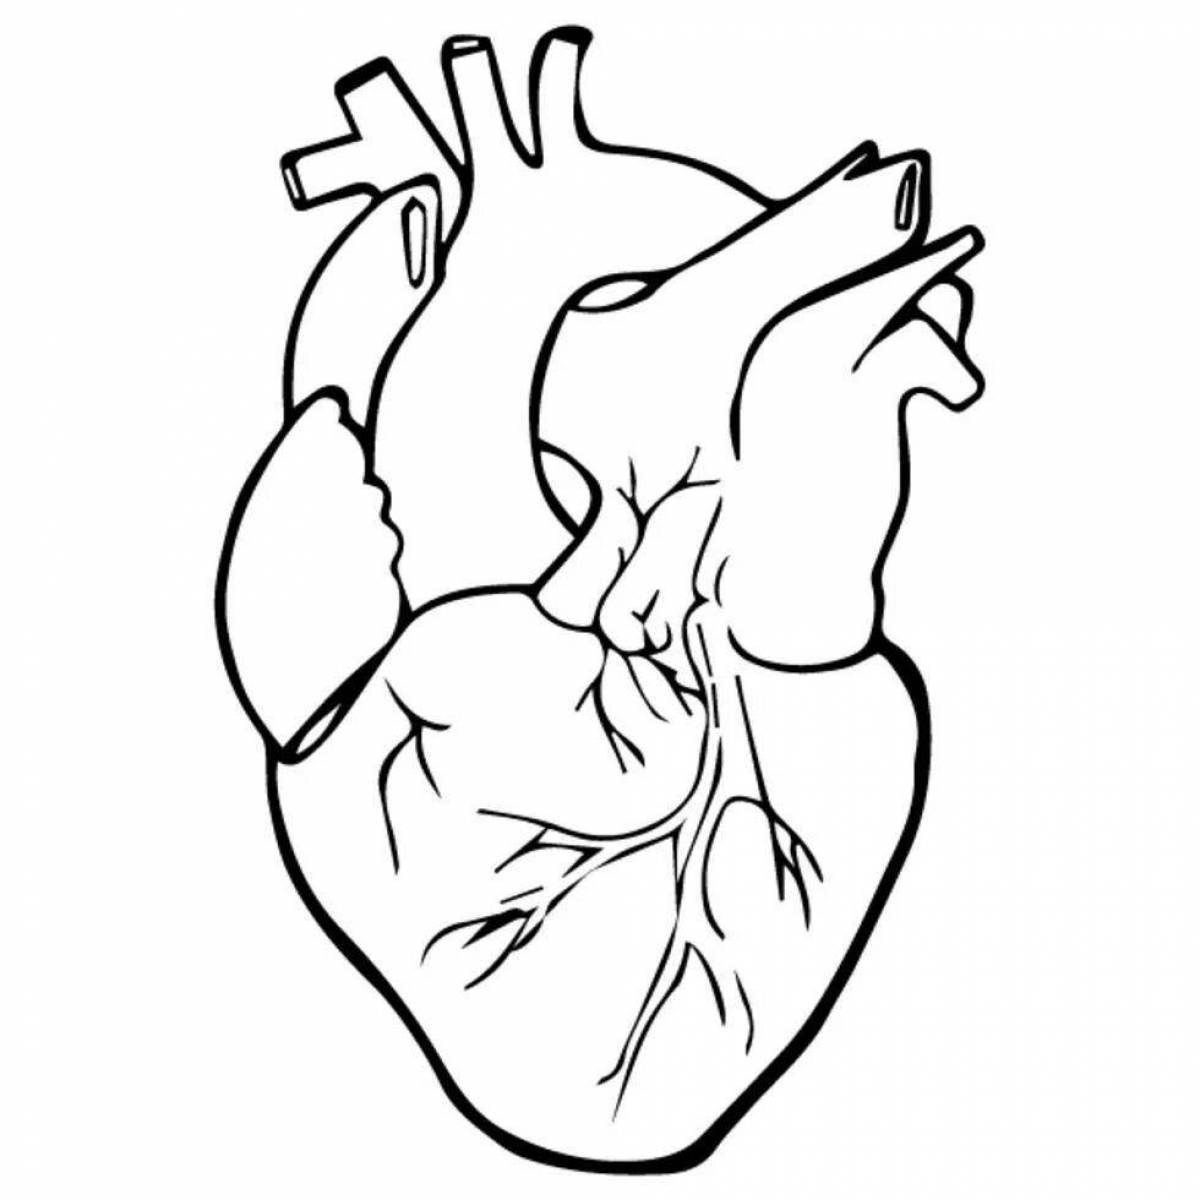 Изысканная анатомическая раскраска сердца